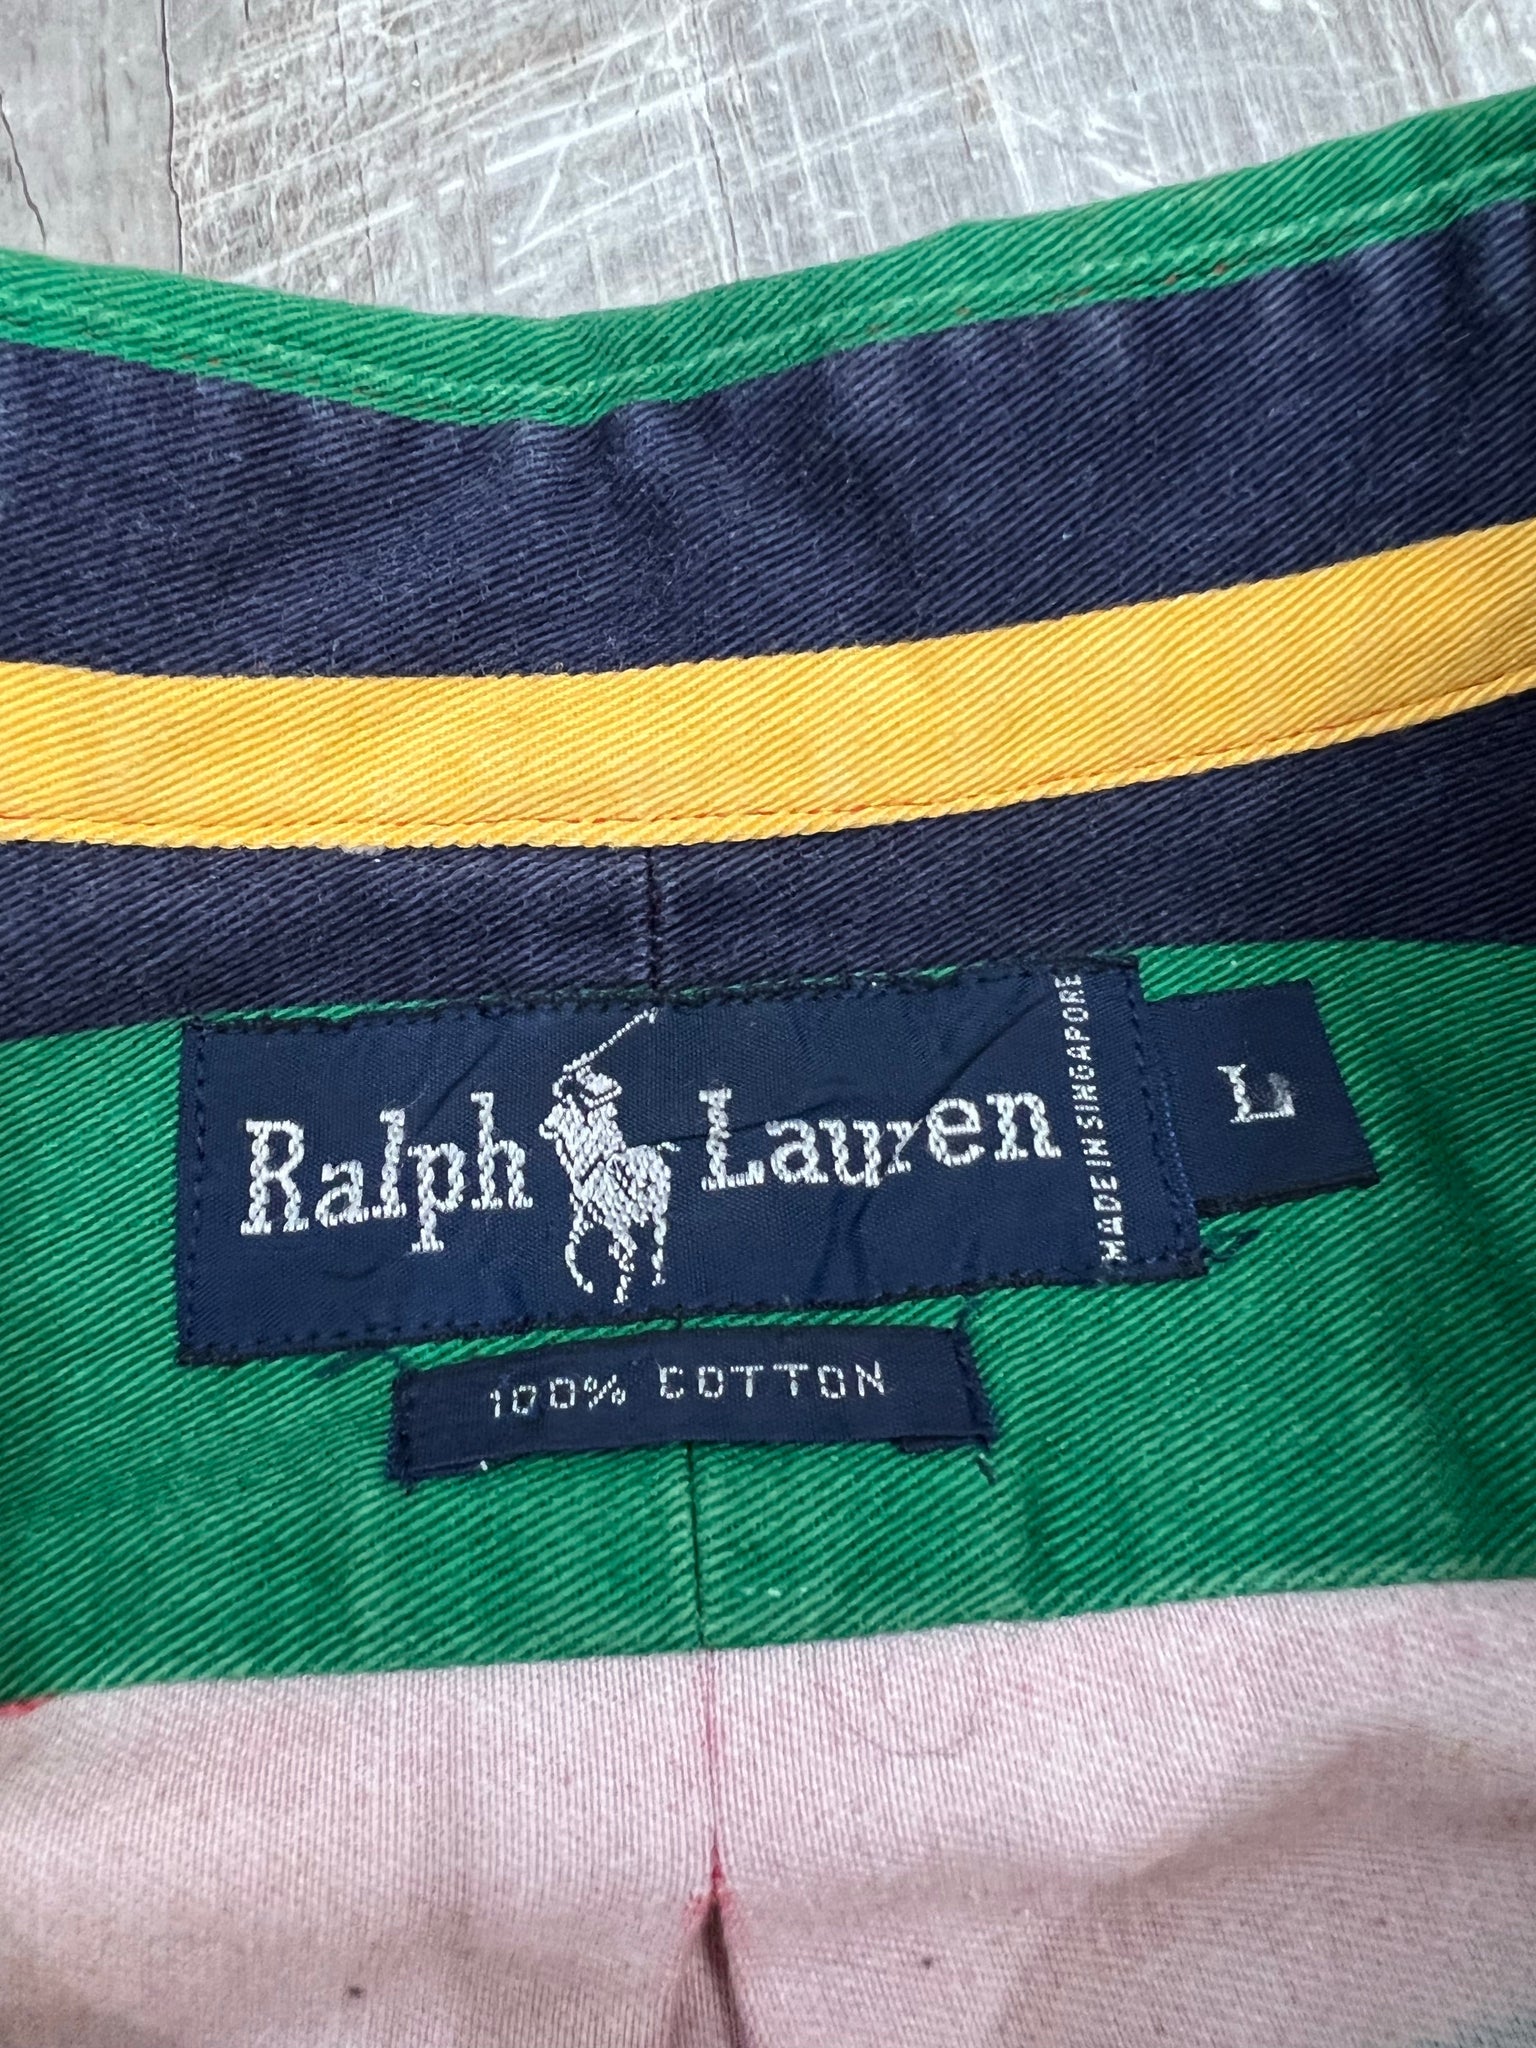 80’s Ralph Lauren lifesaver striped button down shirt XL+